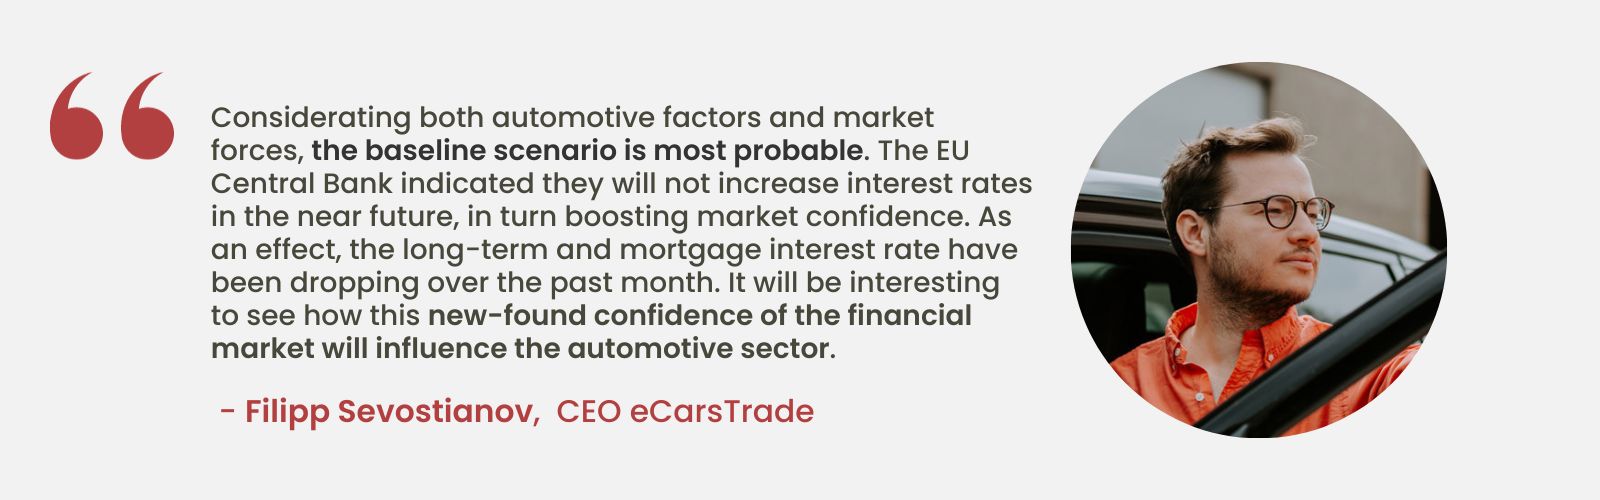 Expertní analýza Filippa Sevostianova, generálního ředitele společnosti eCarsTrade, pojednávající o dopadu stabilních úrokových sazeb EU na důvěru trhu a potenciálních dopadech na automobilový průmysl.